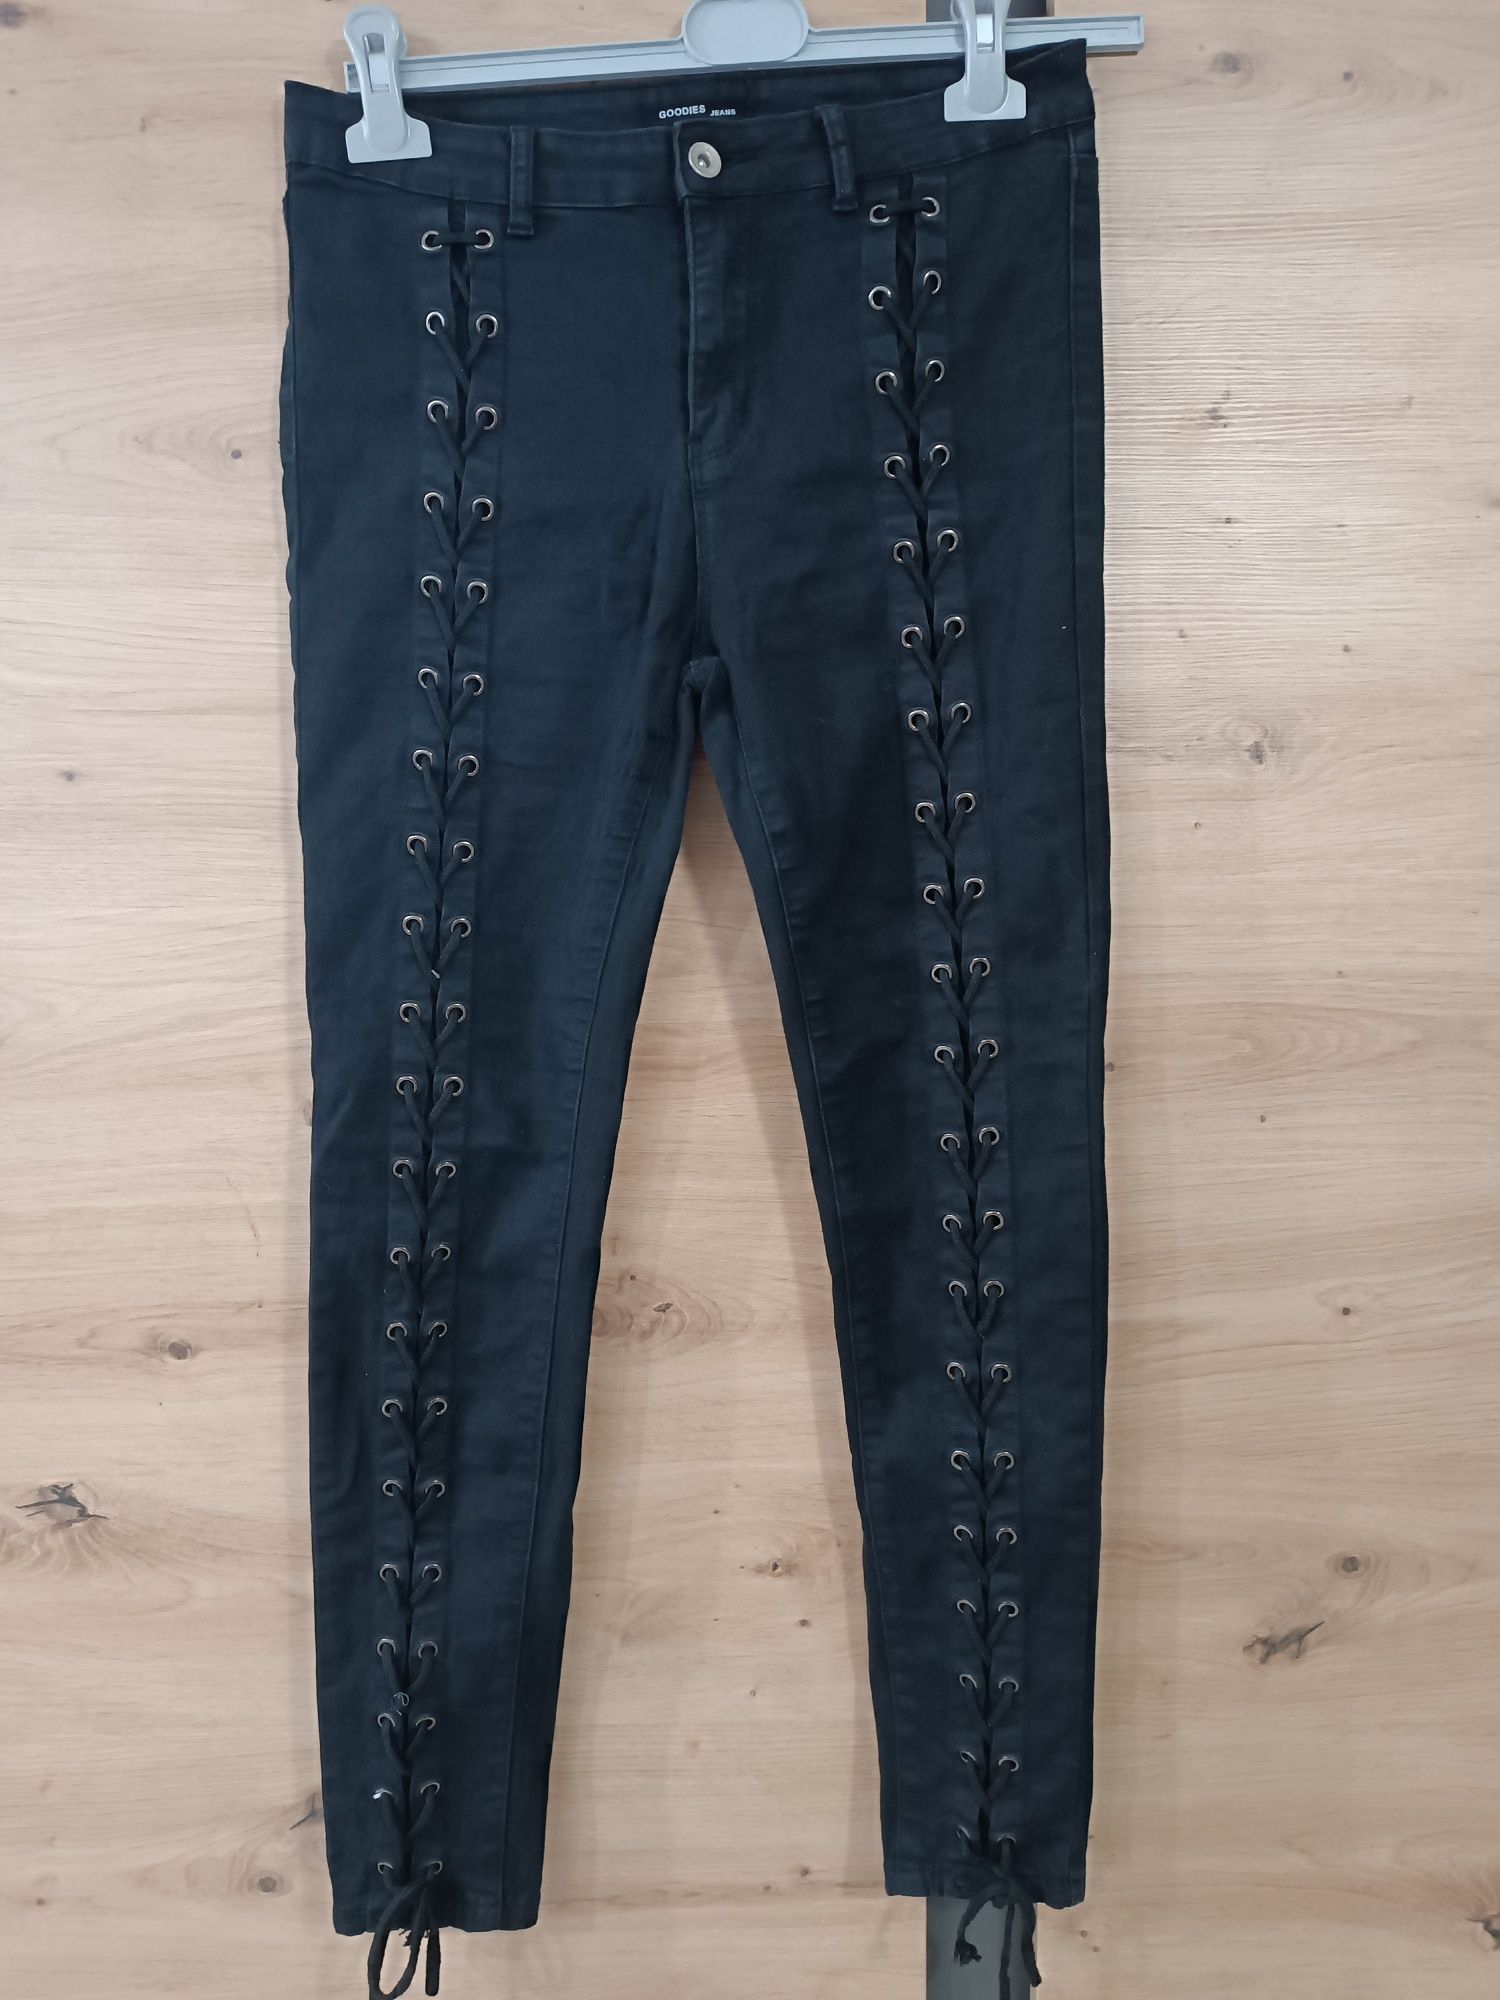 Spodnie damskie czarne sznurowane goodies jeansy M